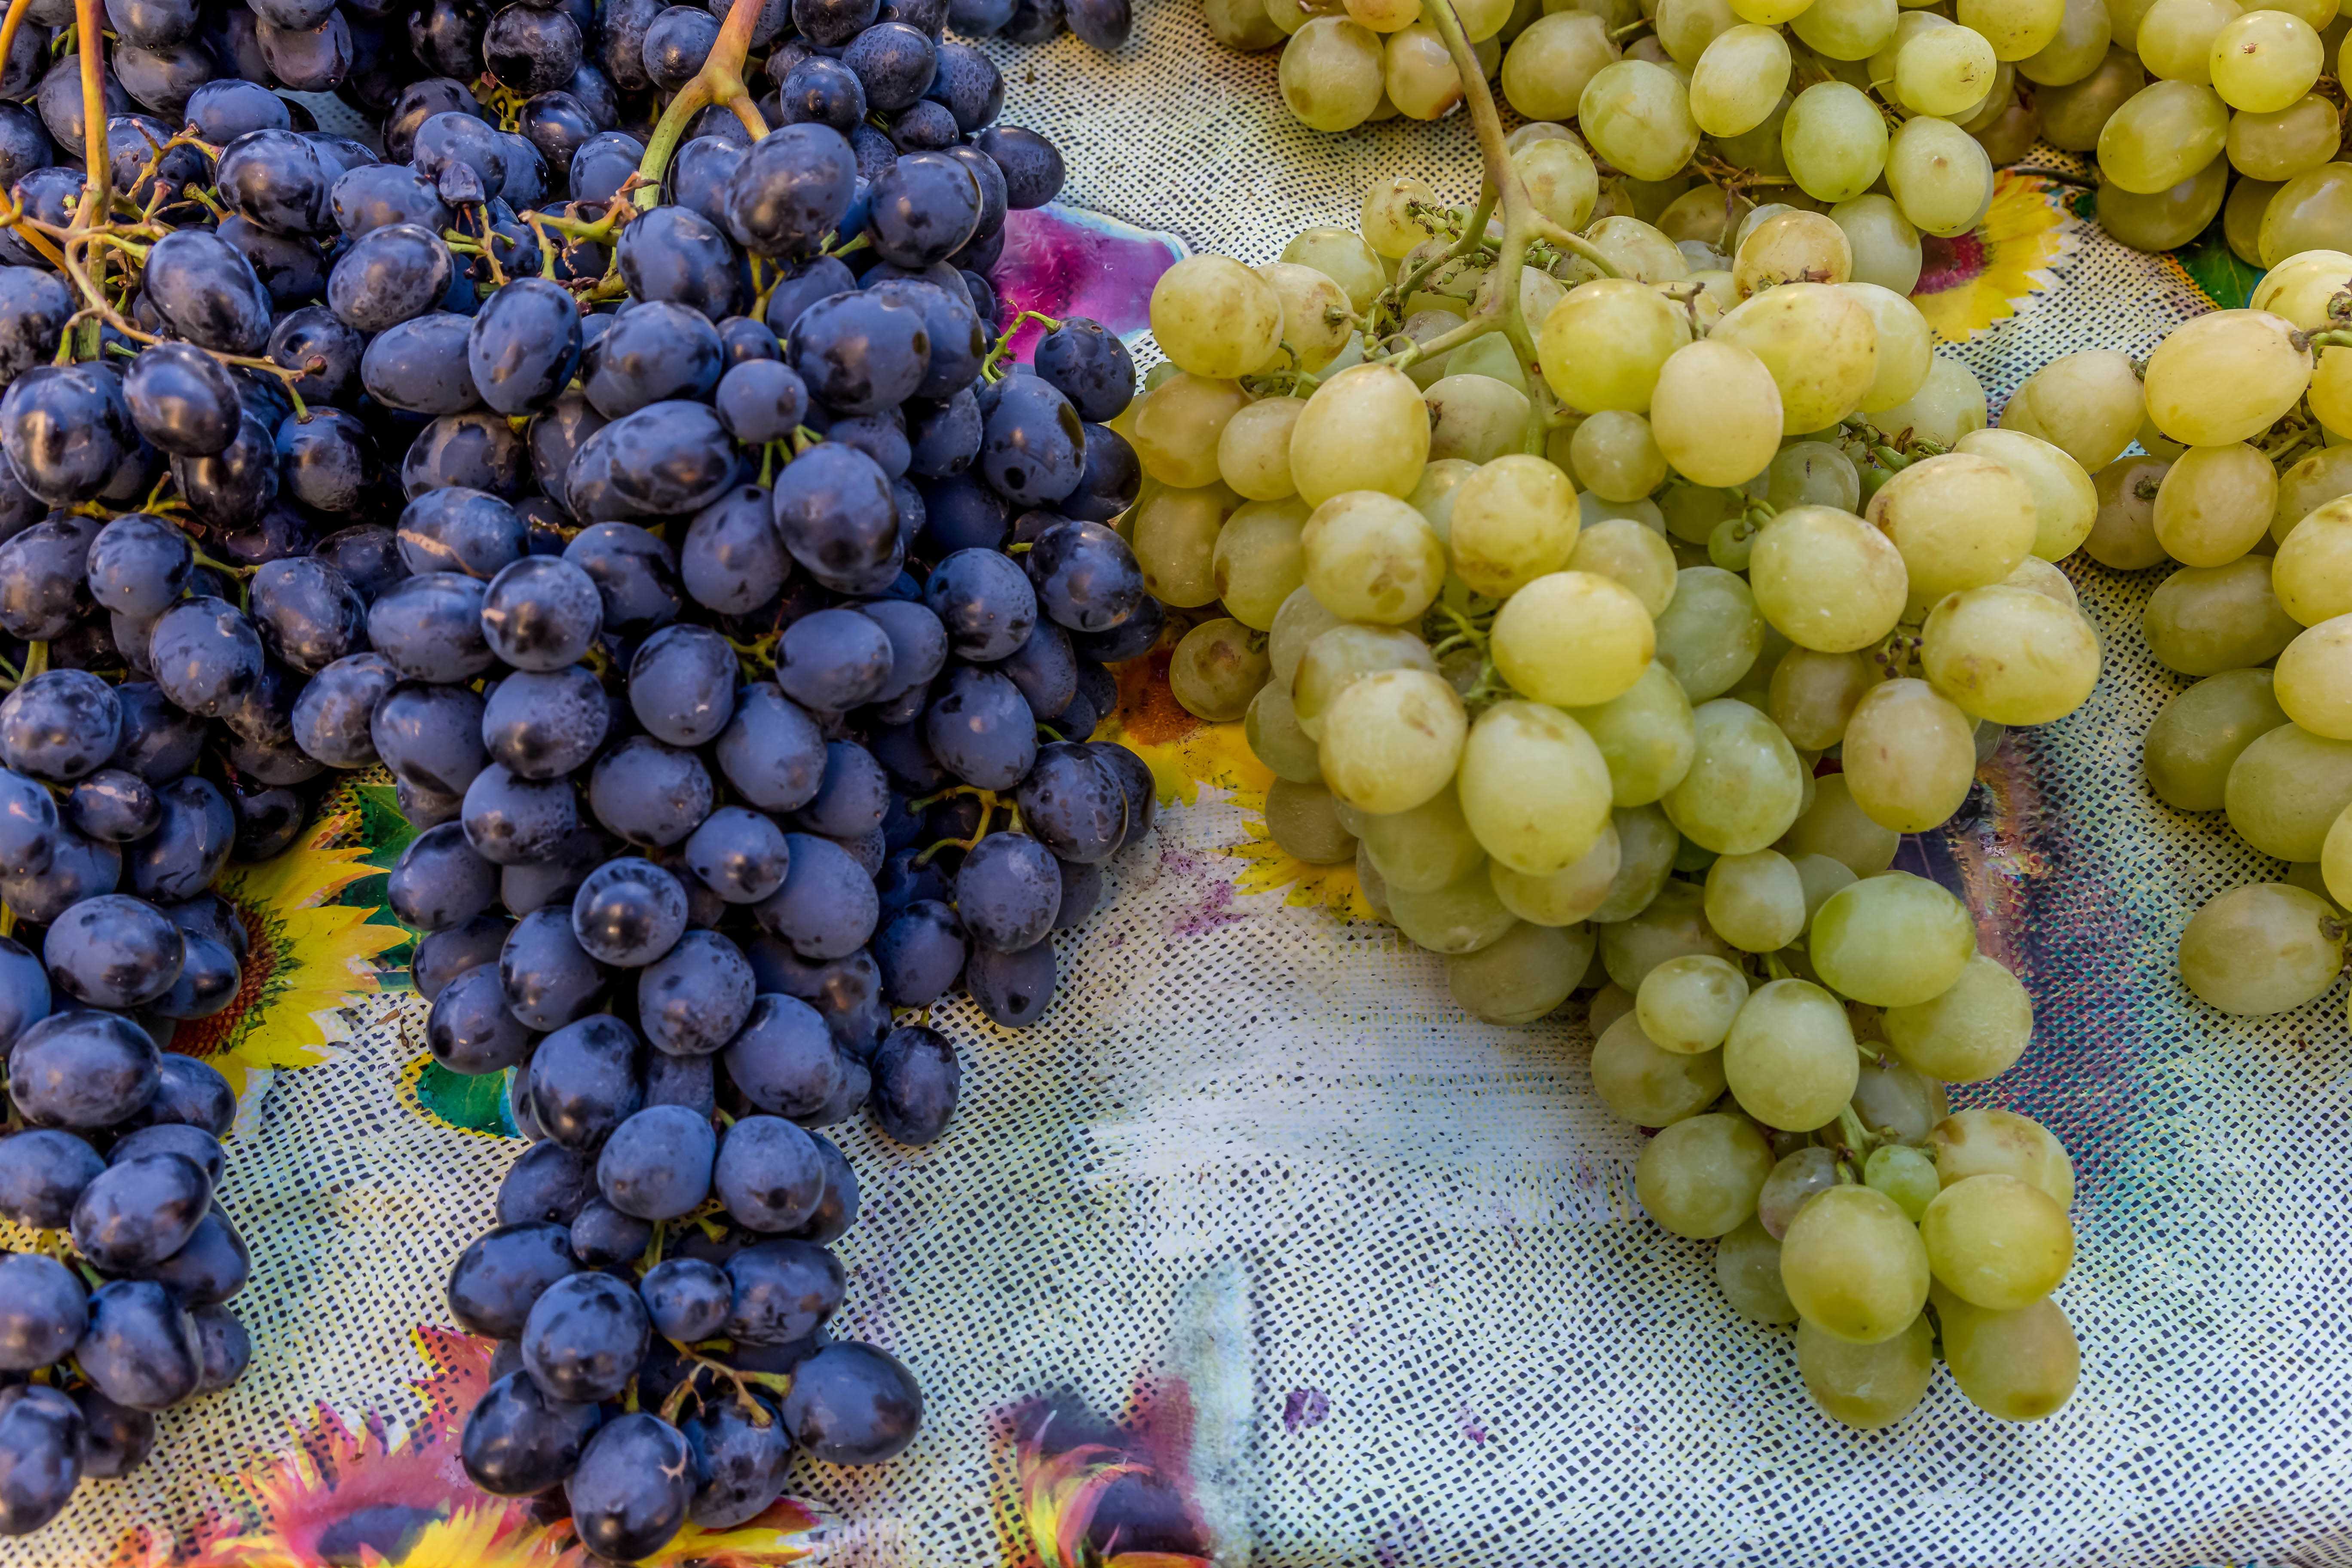 Сонник виноград: к чему снится виноград женщине